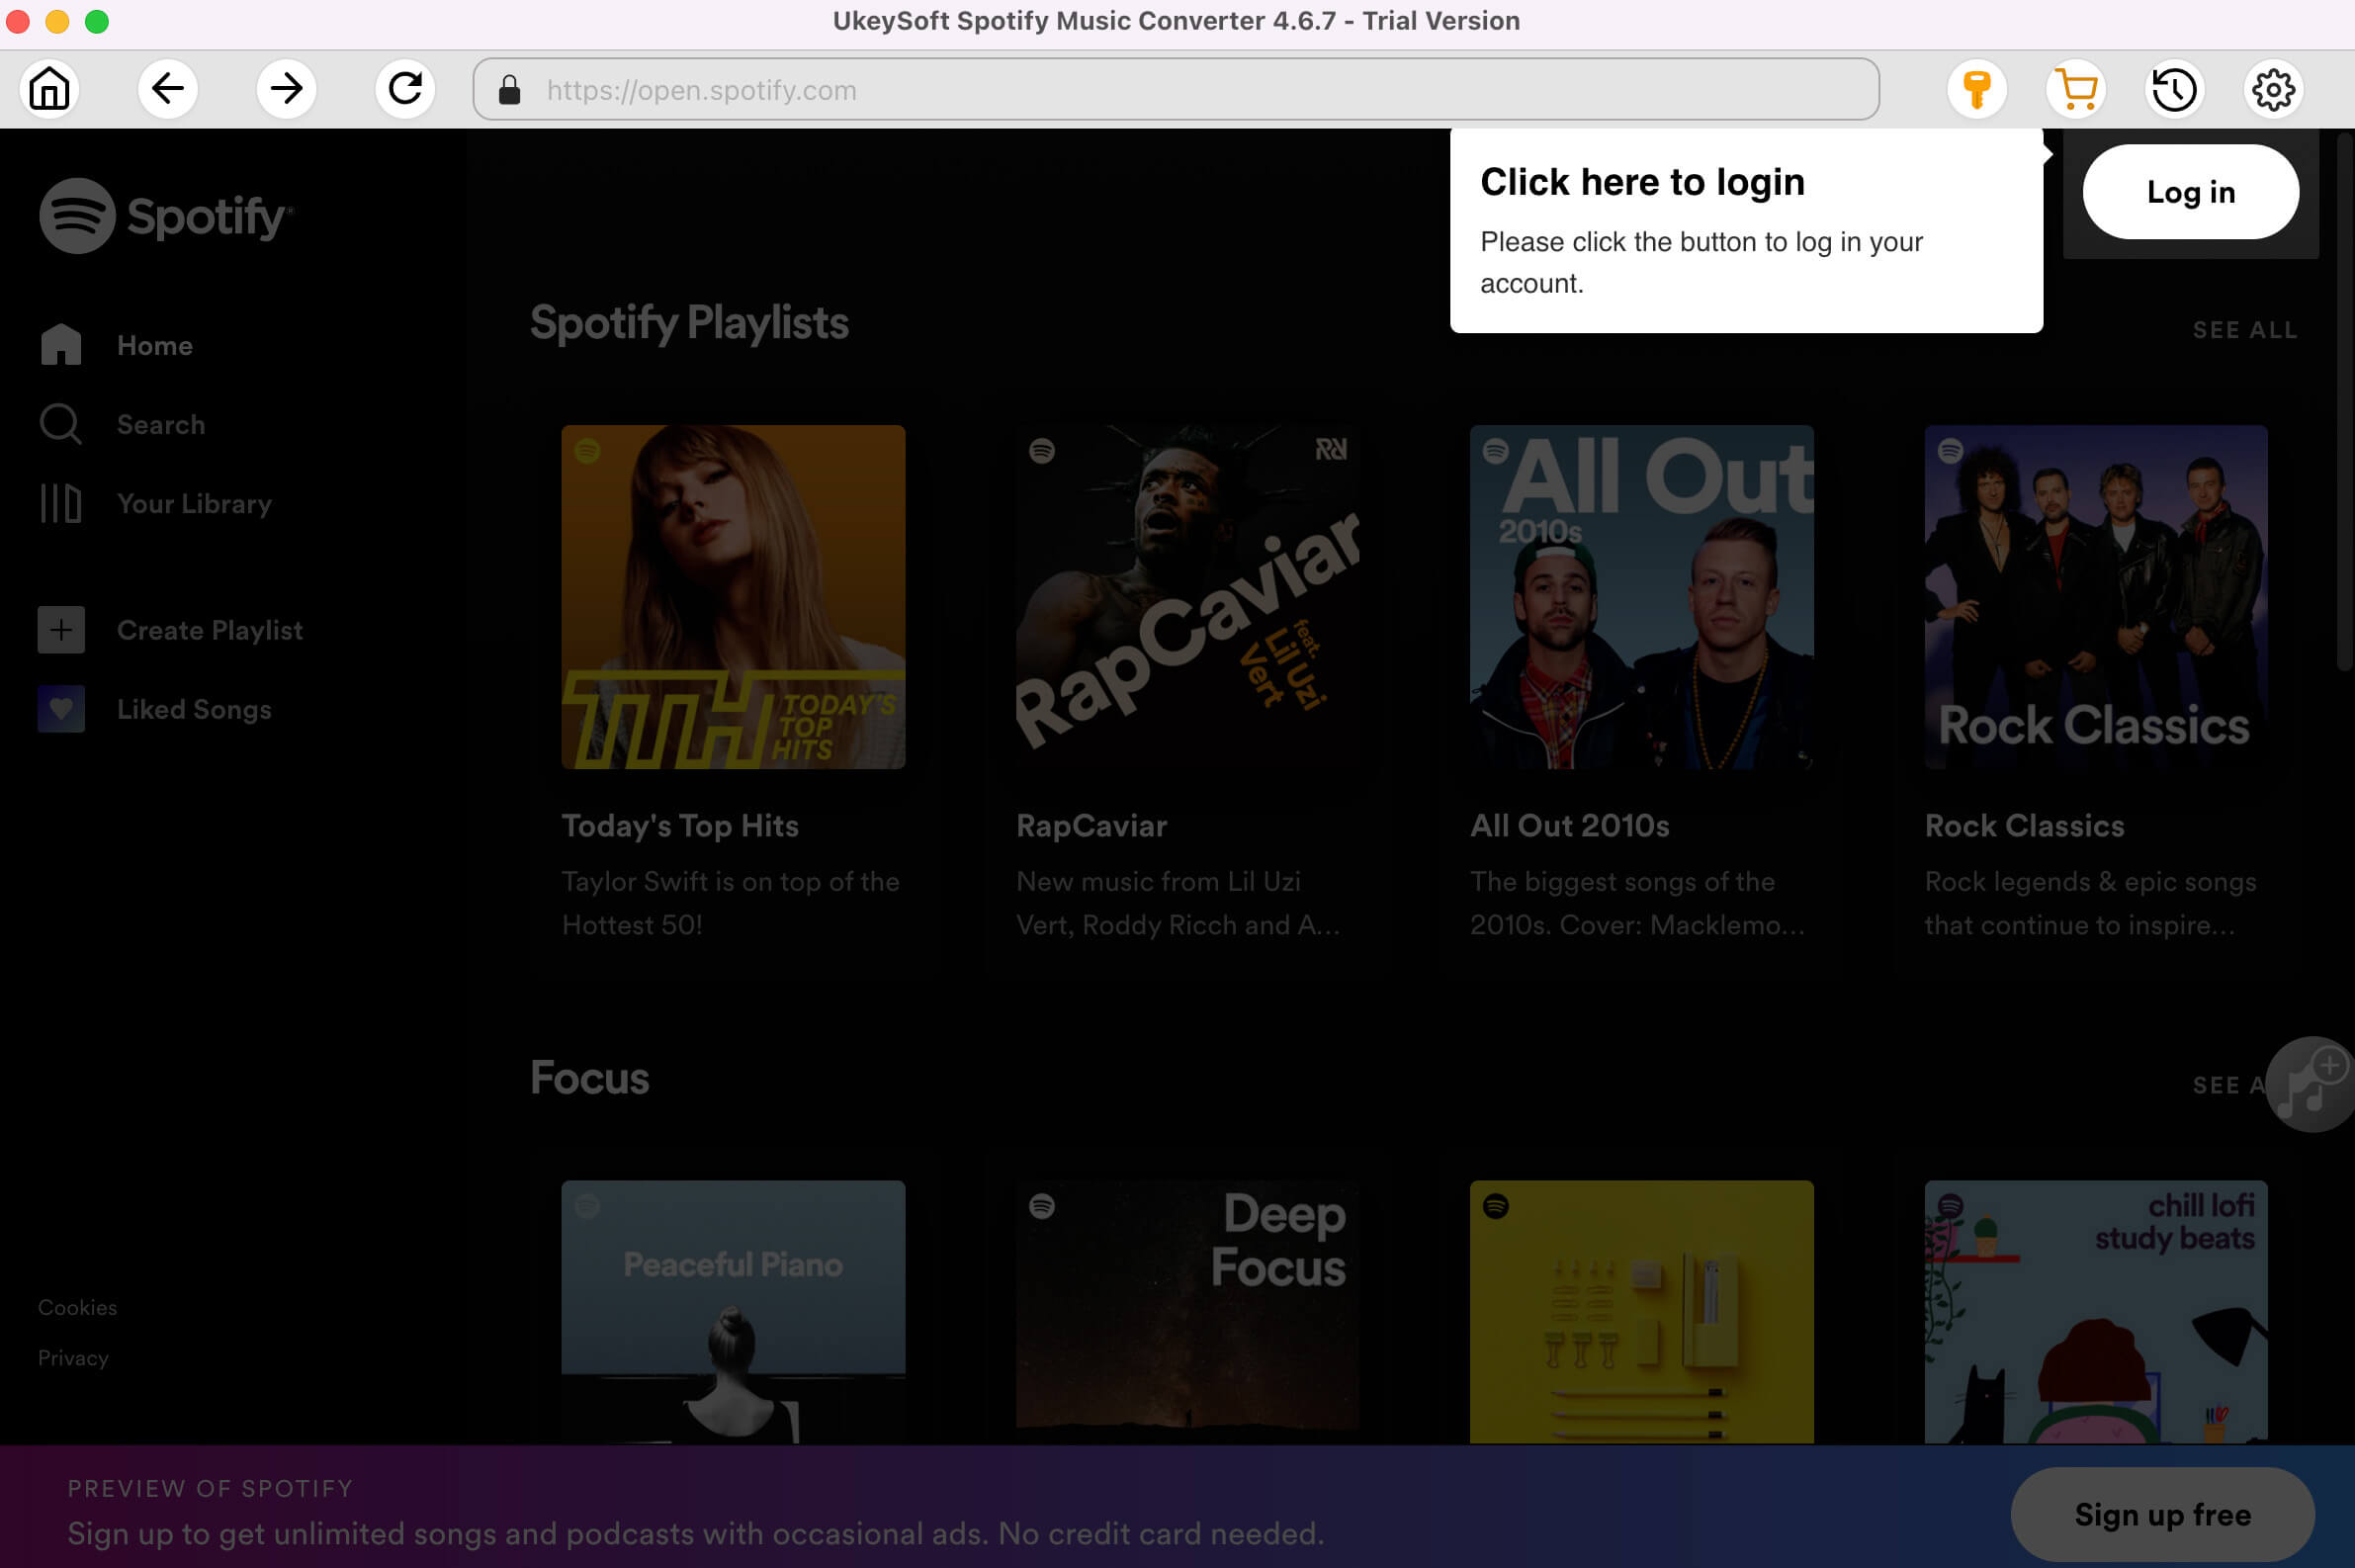 Launch UkeySoft Spotify Music Converer